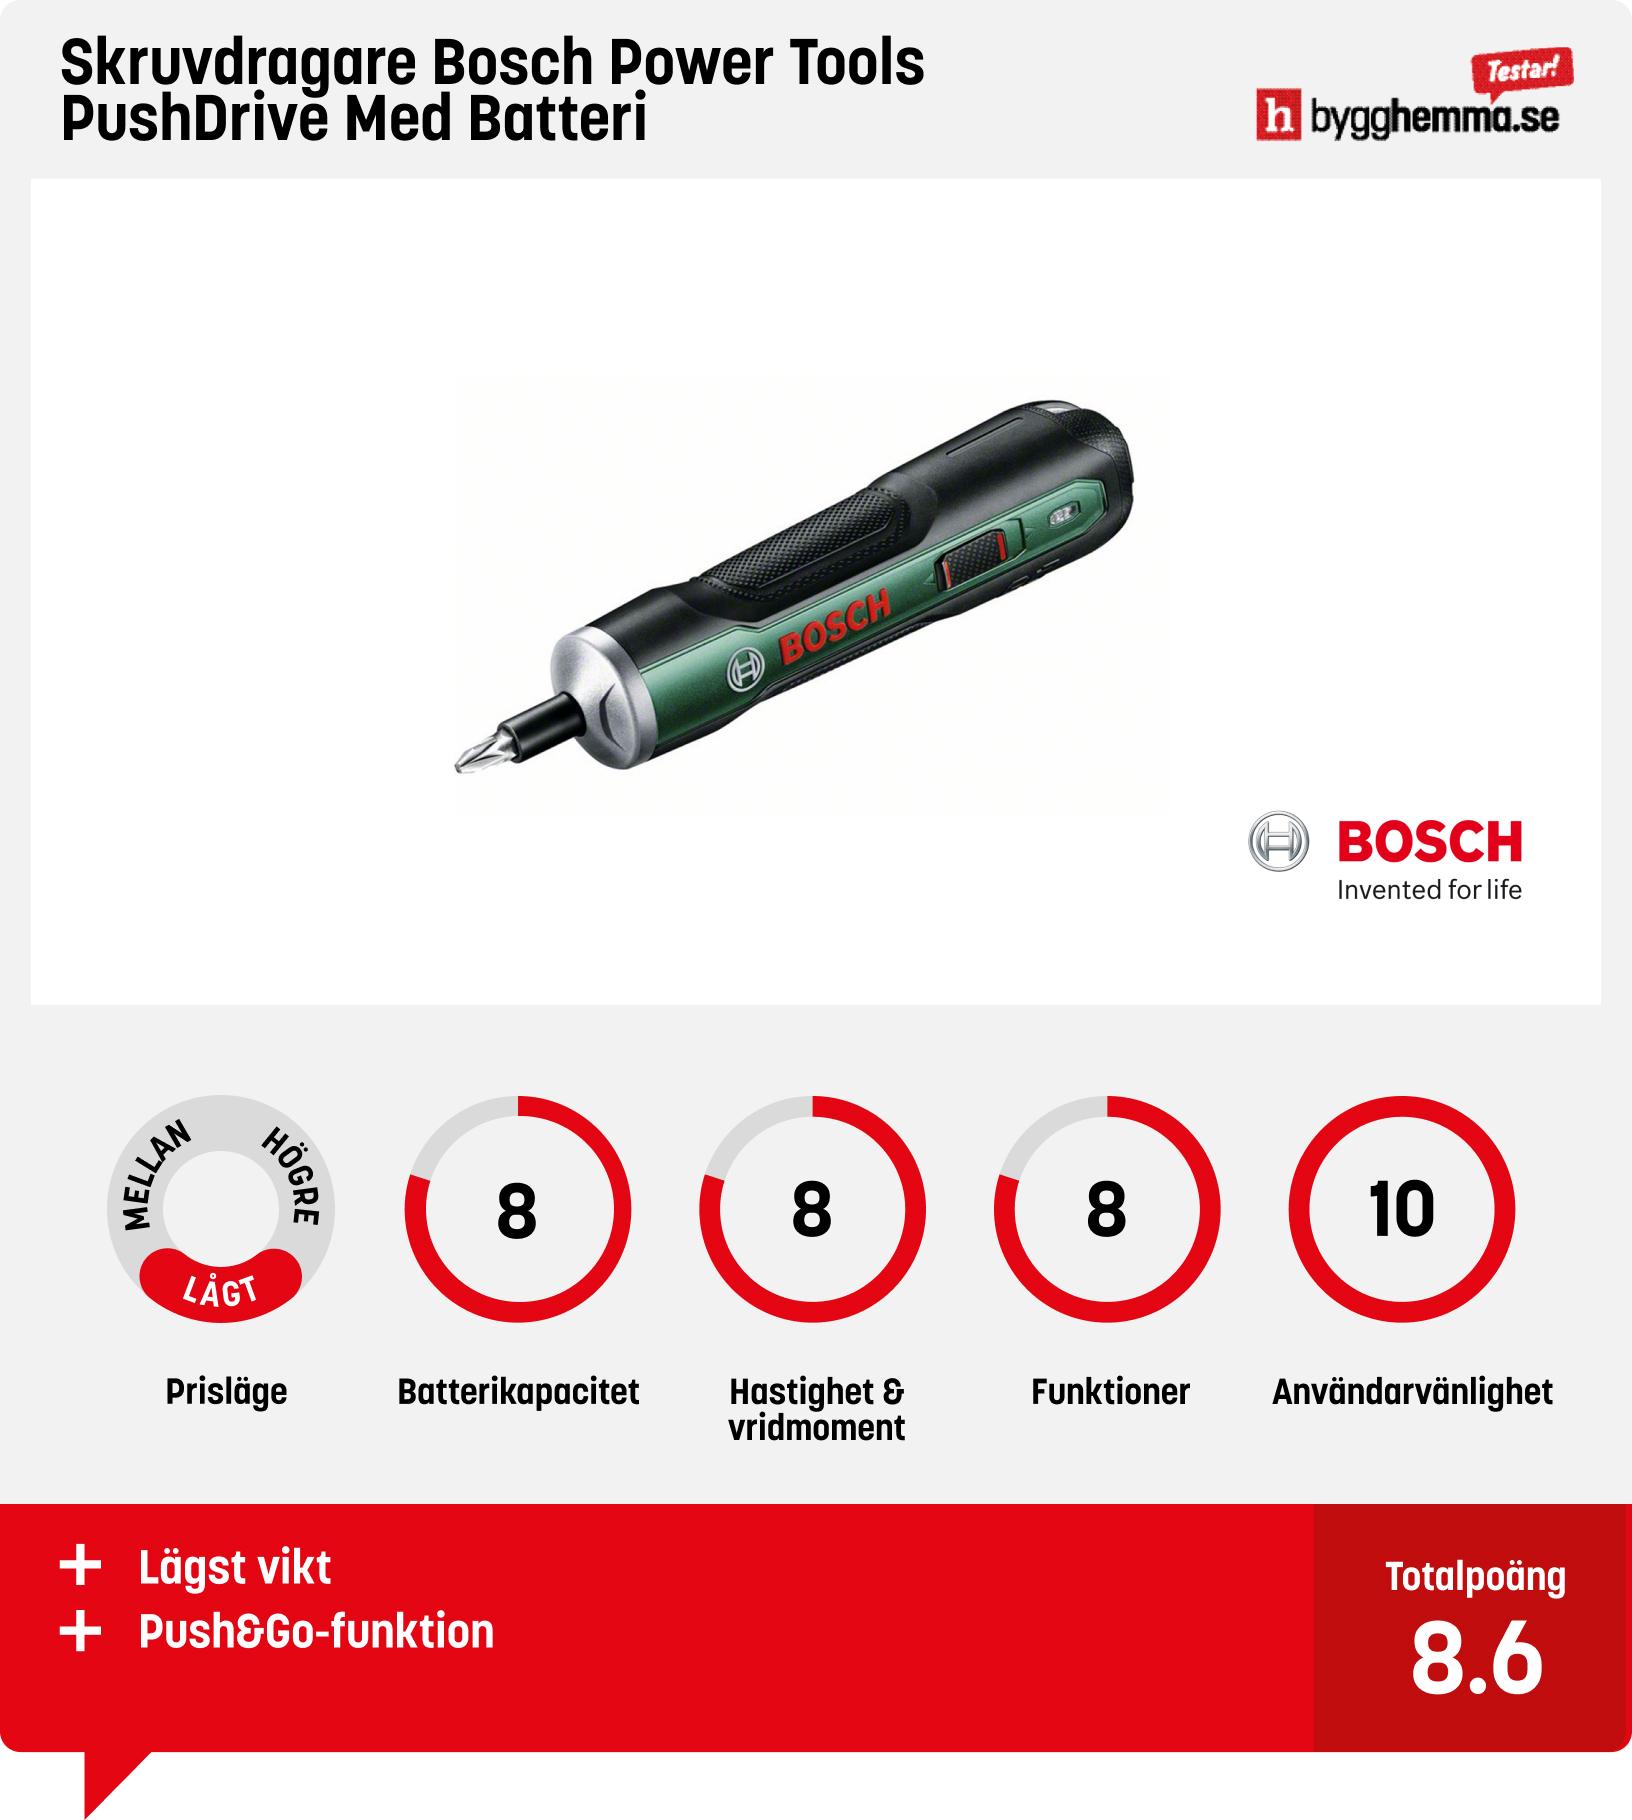 Skruvdragare test - Skruvdragare Bosch Power Tools PushDrive Med Batteri